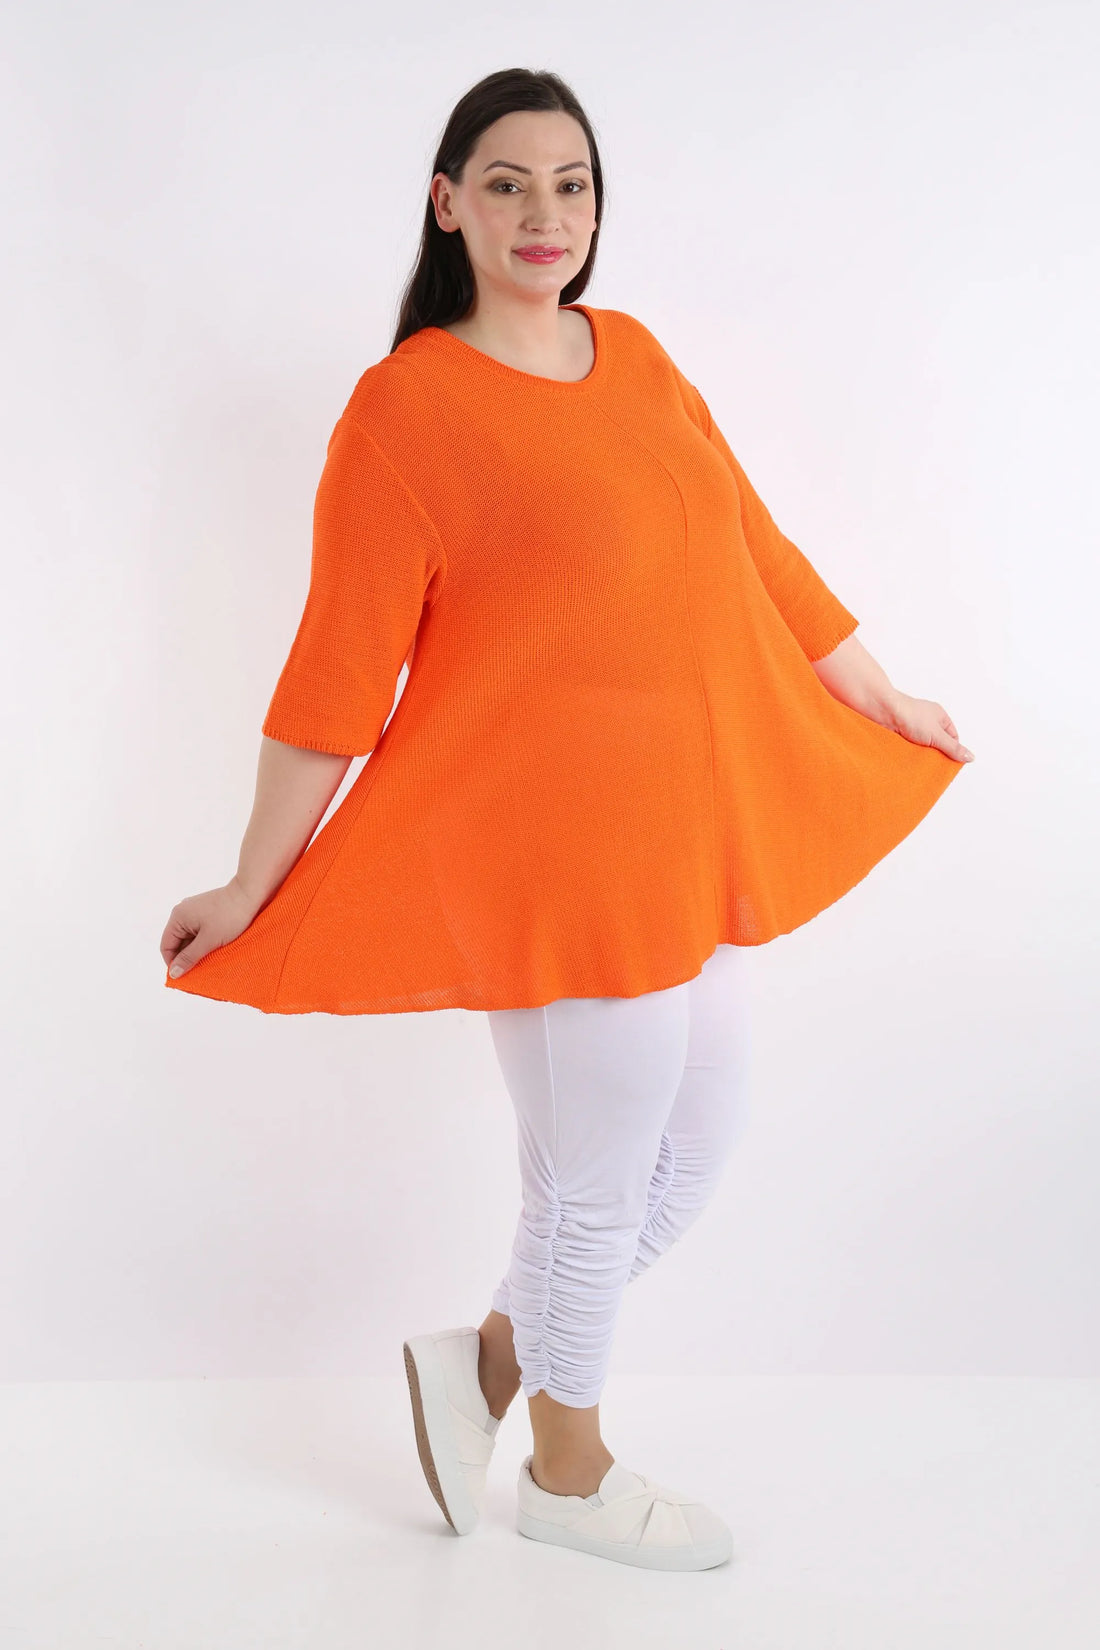 Shirt von AKH Fashion aus Baumwolle in Glocken-Form, 1110.01892, Orange, Schick, Modern